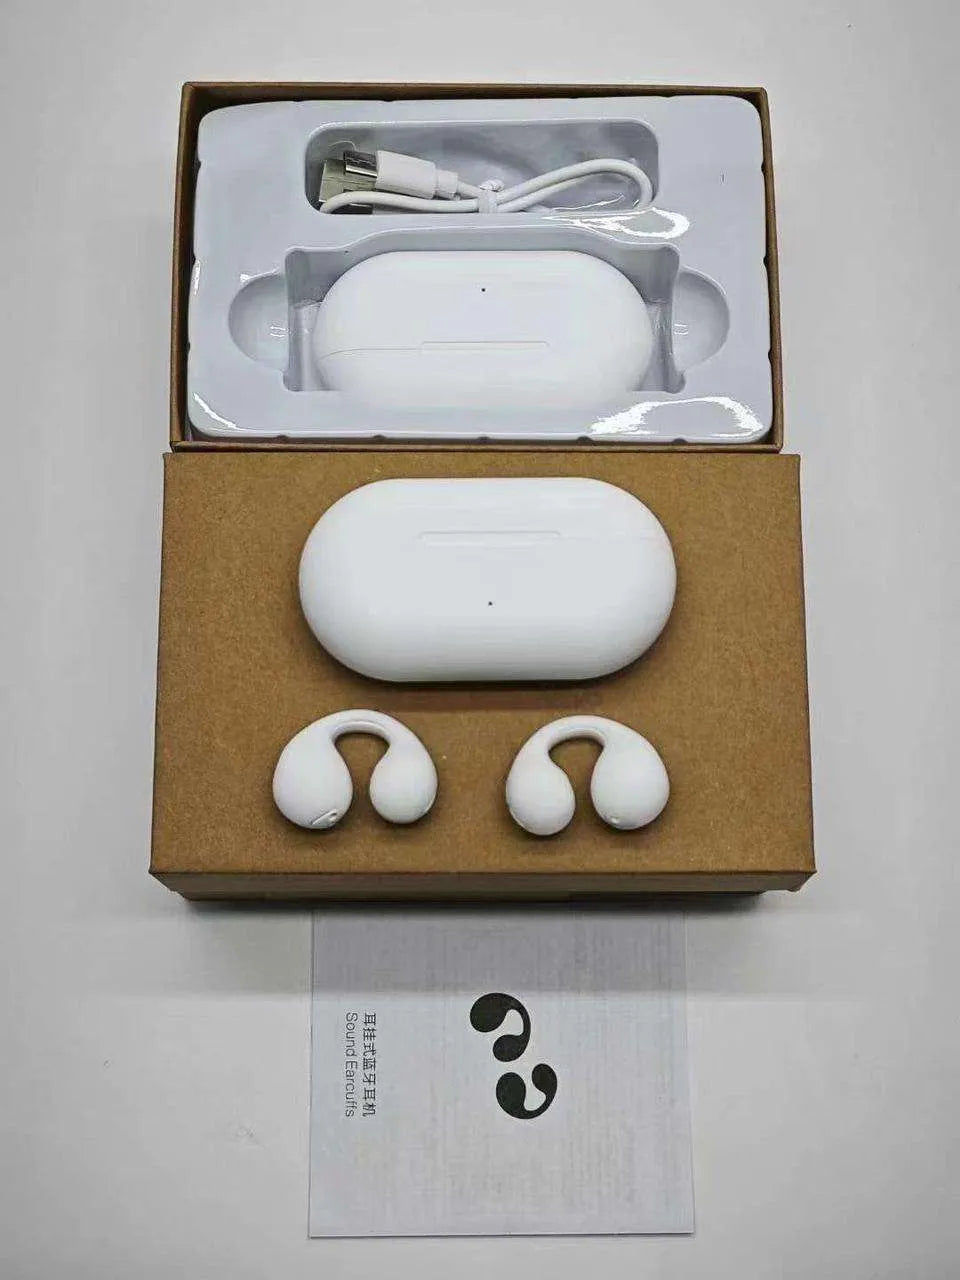 Ambie Sound Earcuffs AM-TW01 Wireless Earphone Open-Ear Bluetooth